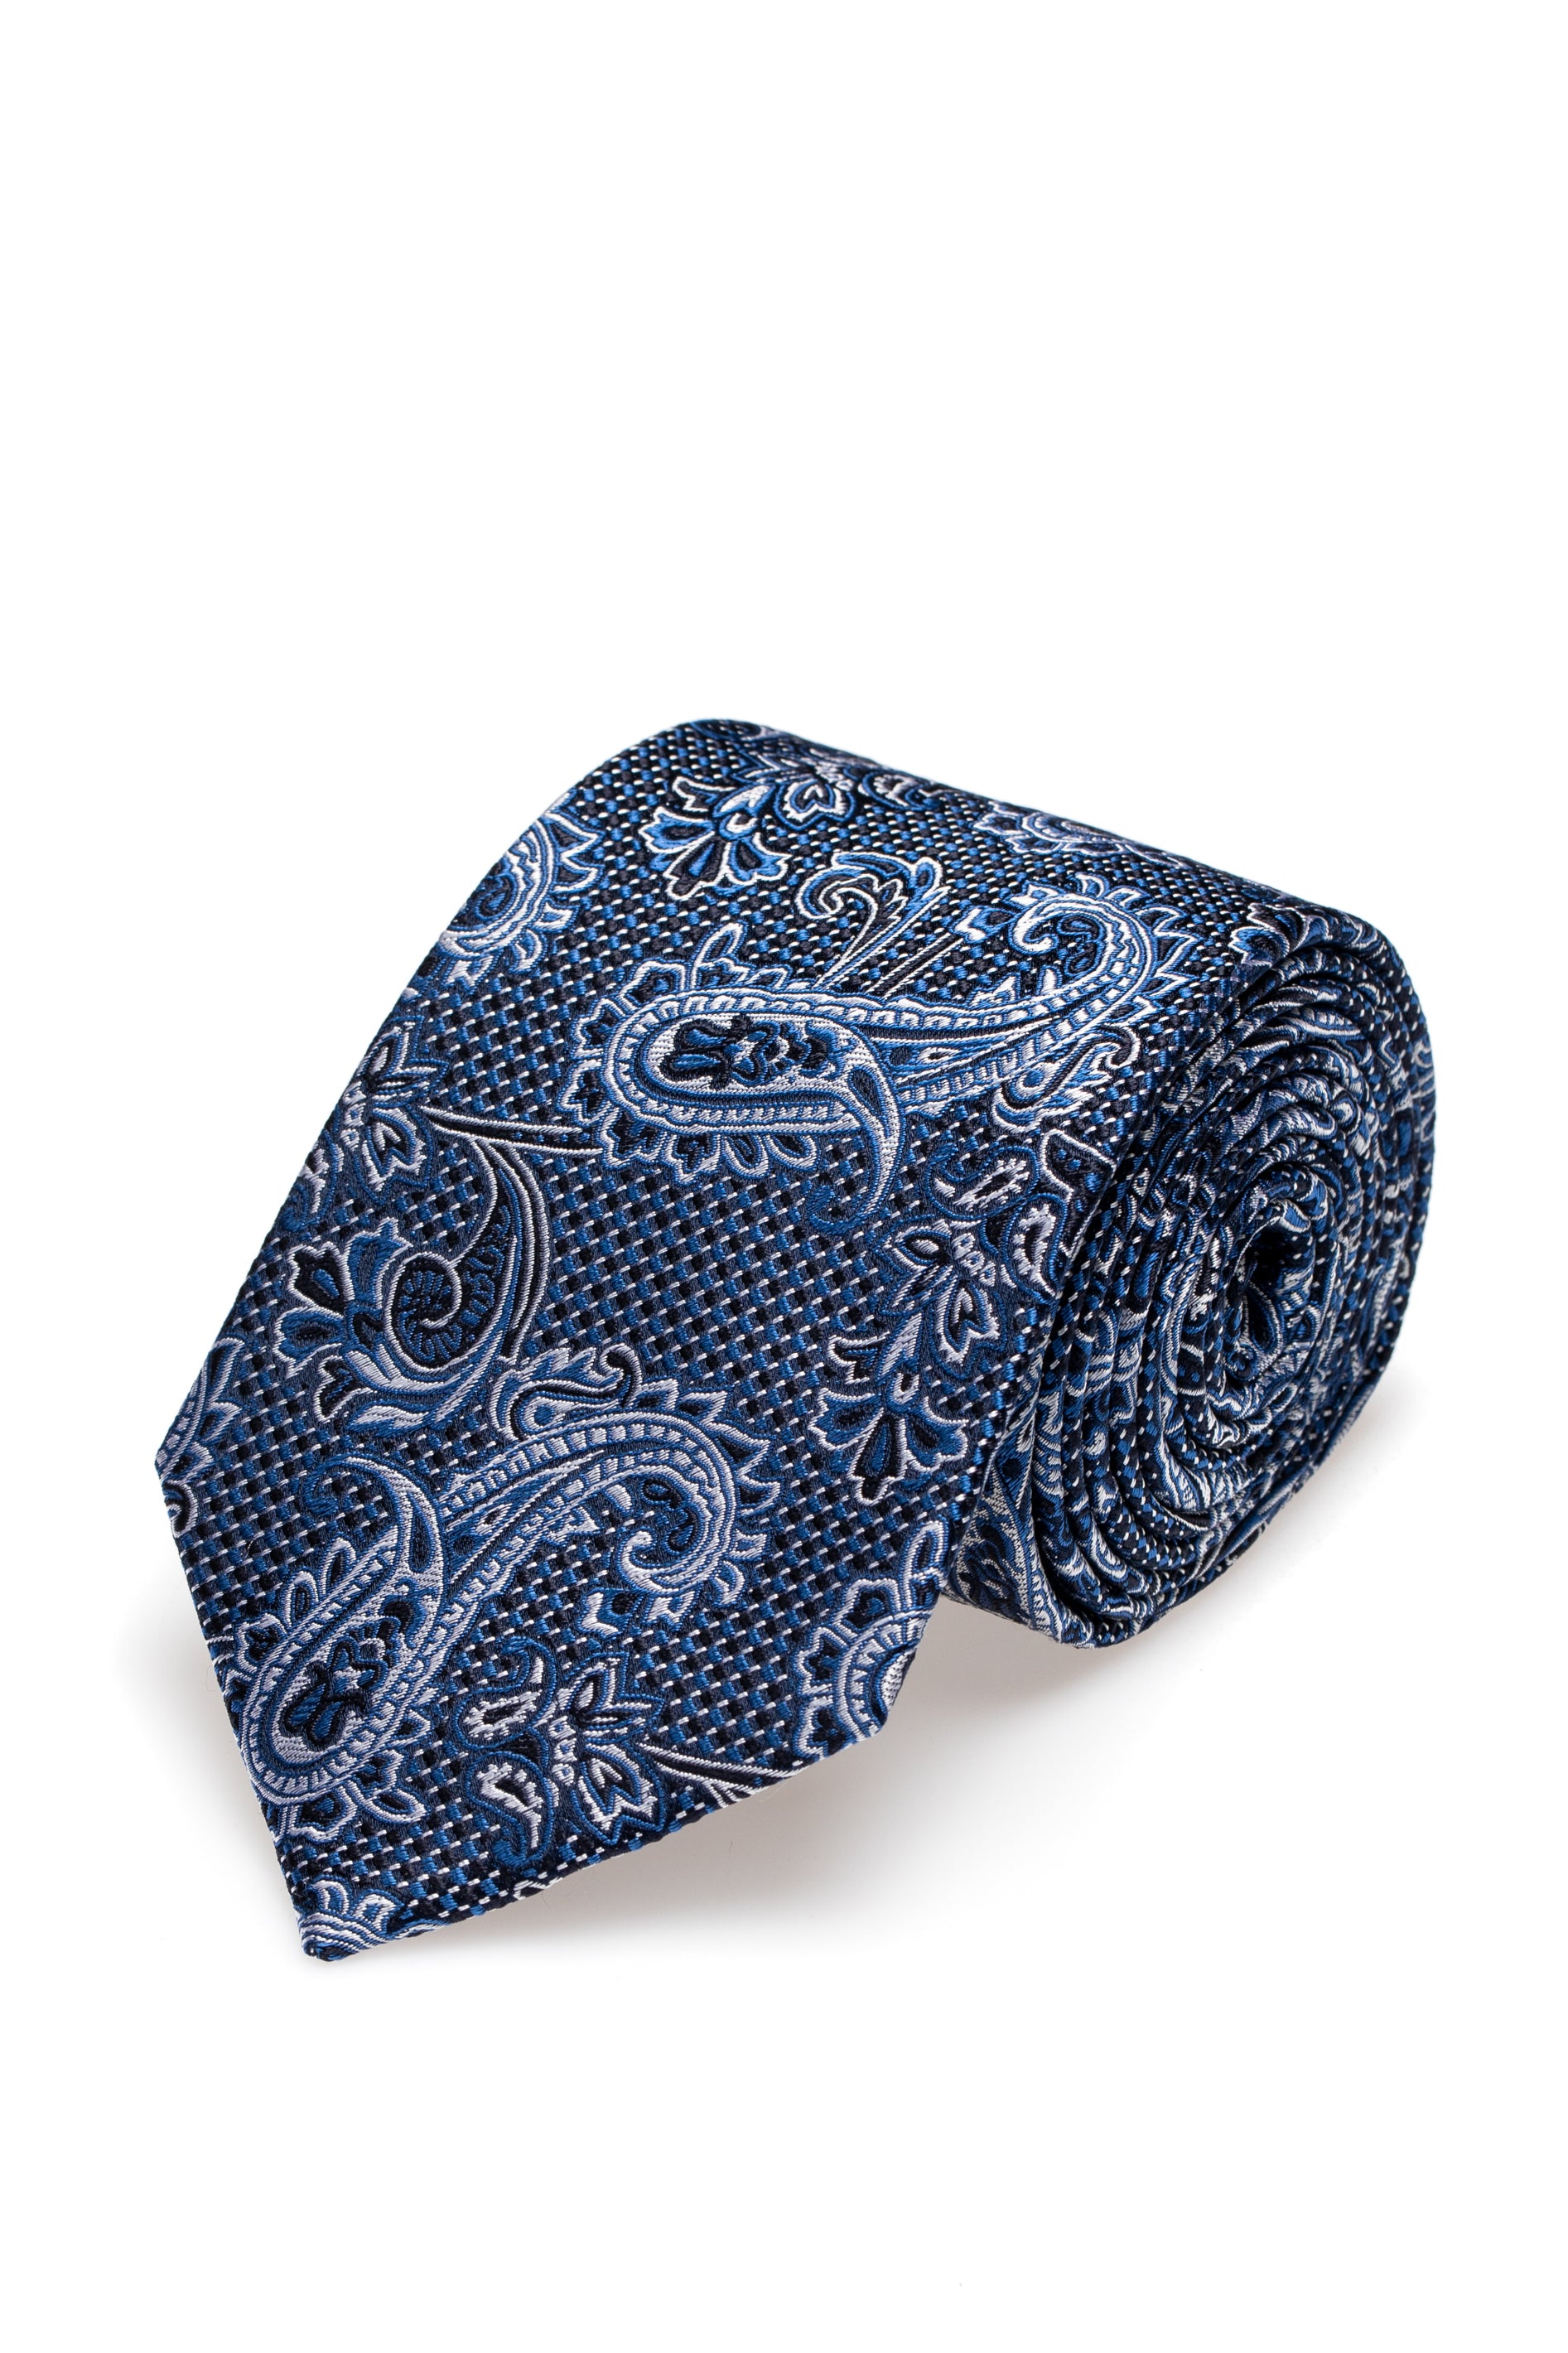 Blue paisley silk tie